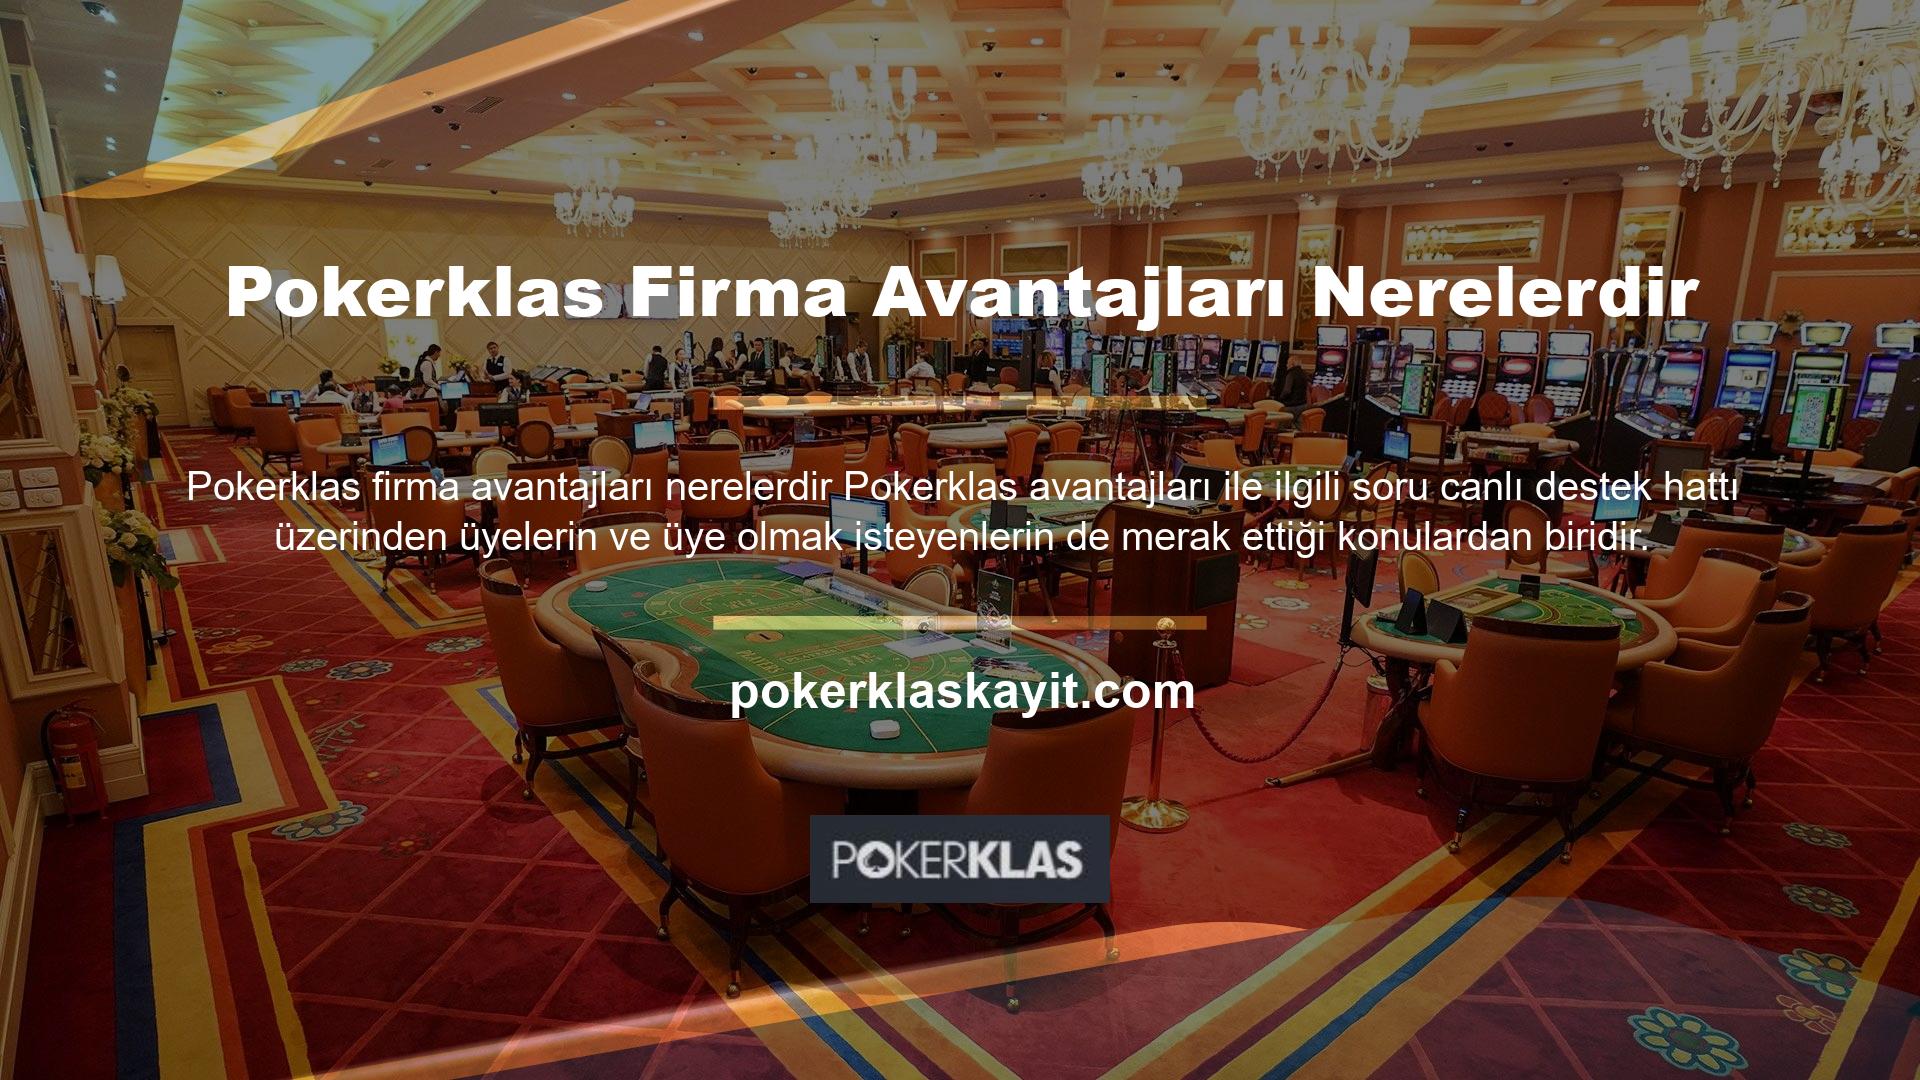 Pokerklas bahis şirketlerinin avantajları promosyonlar alanındadır ve birçok çeşidi vardır